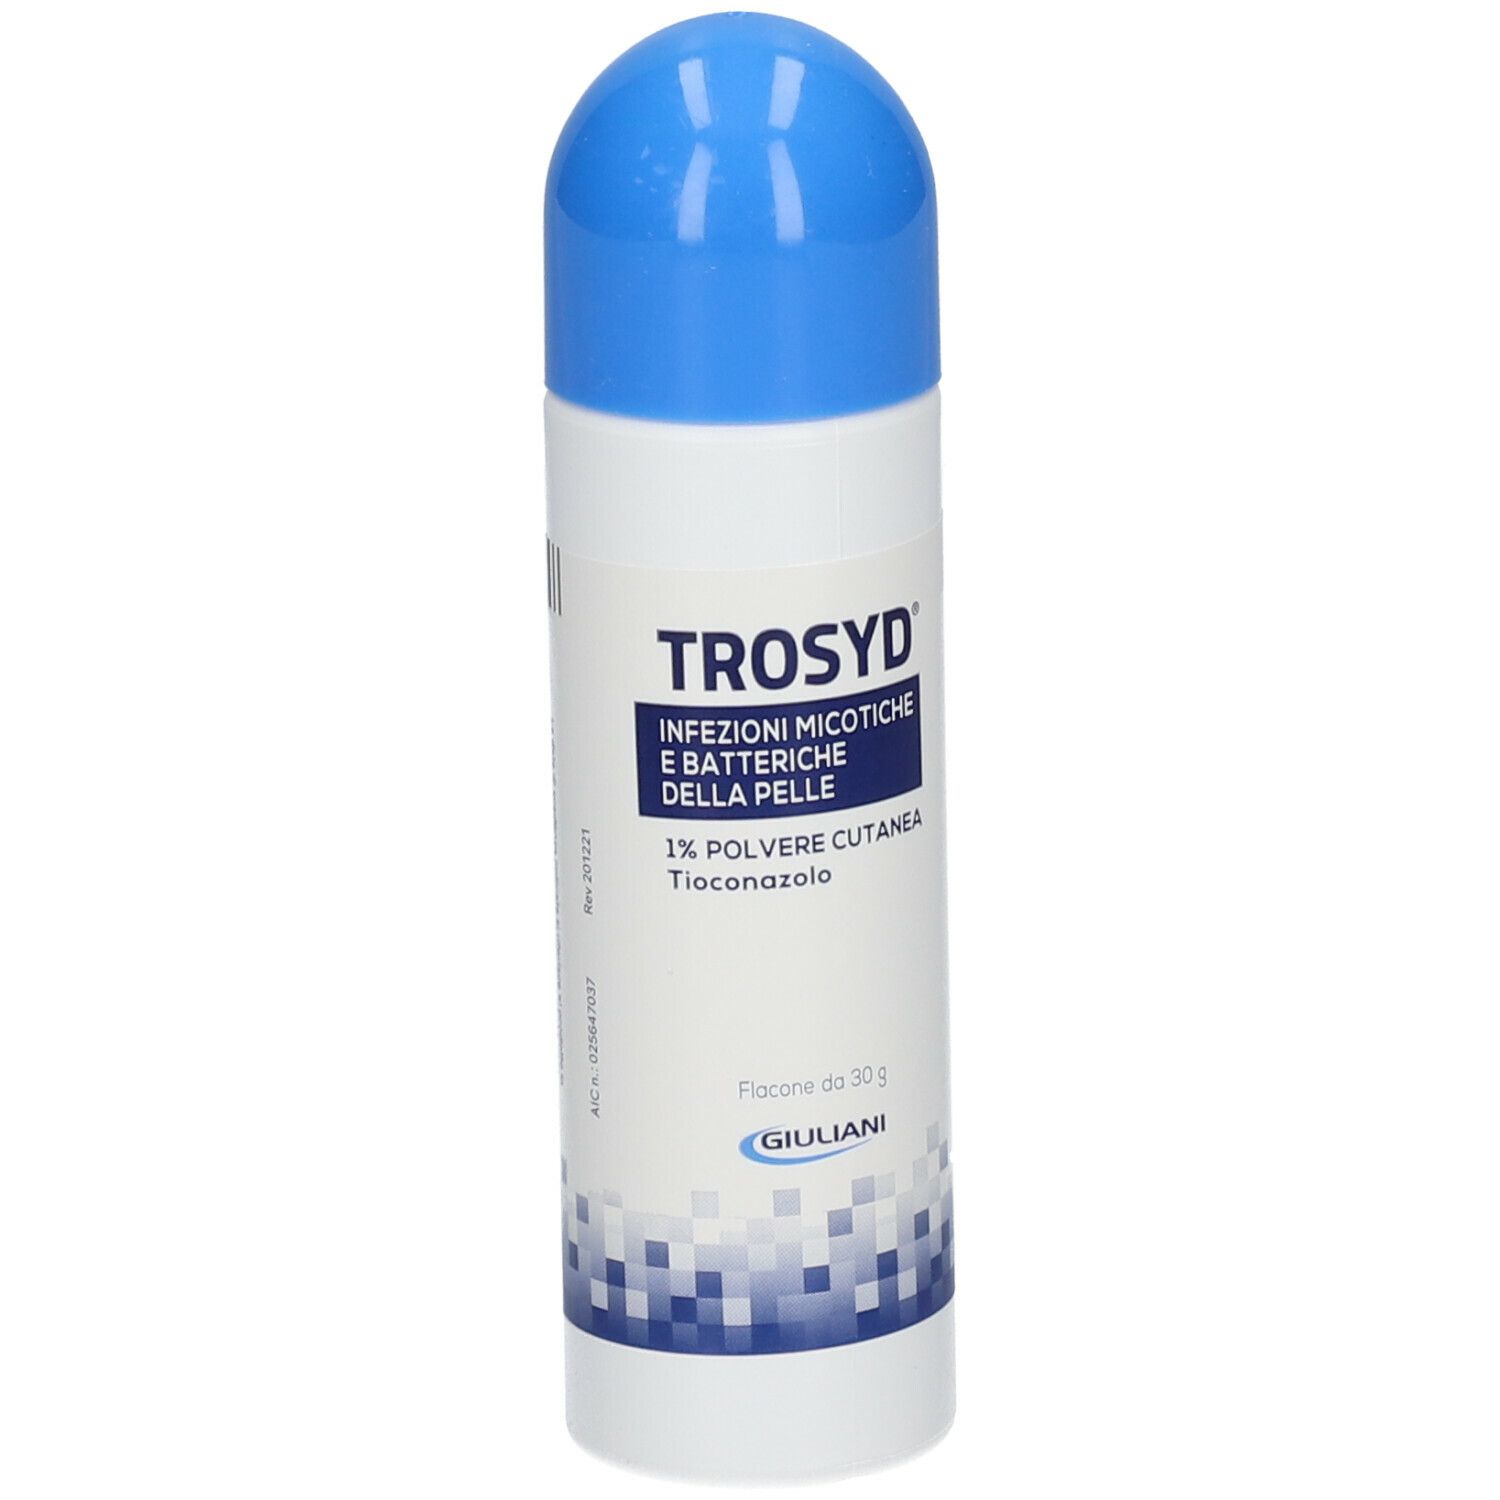 TROSYD® 1% Polvere Cutanea